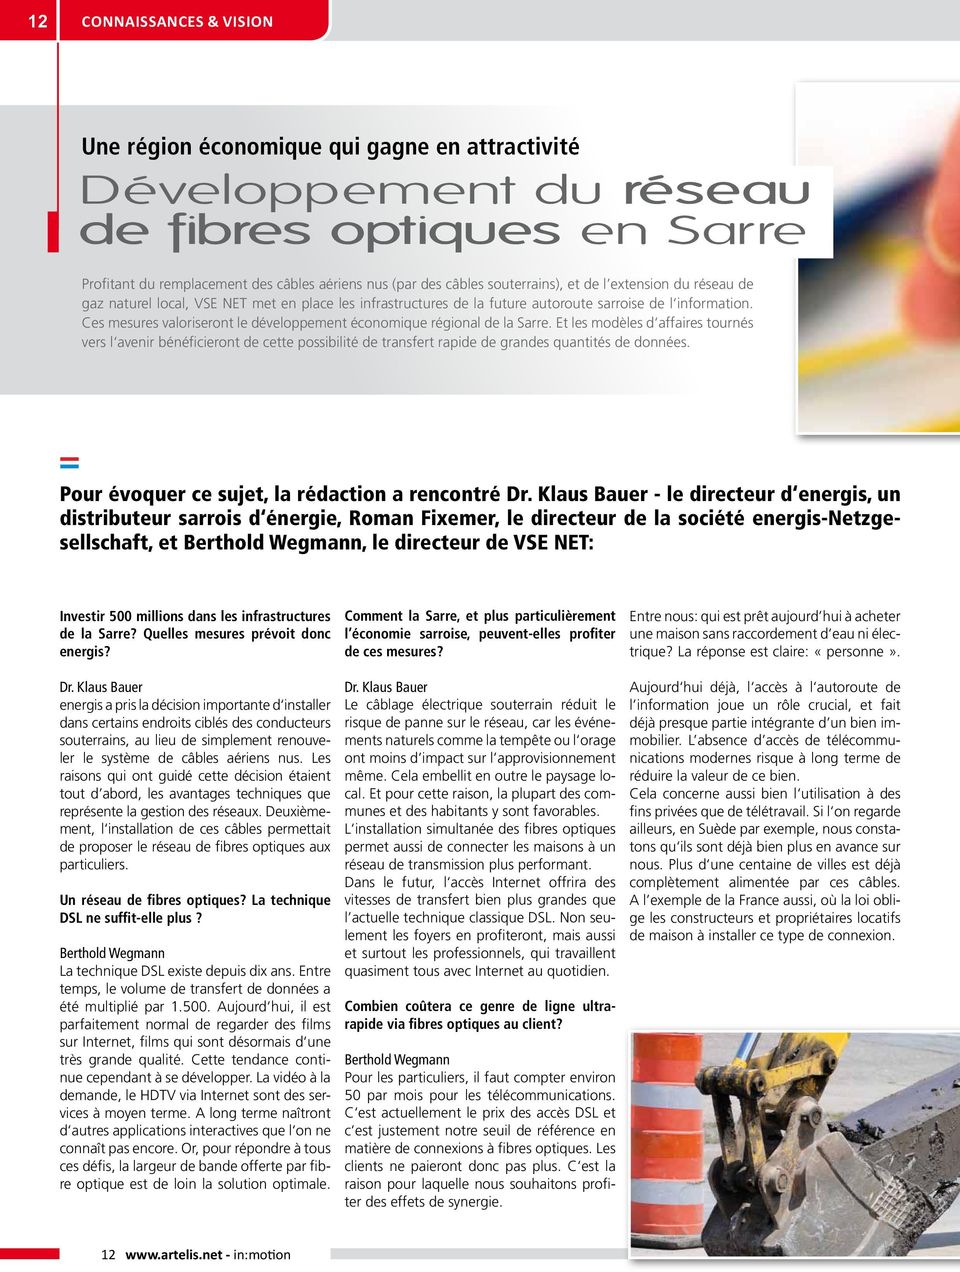 Ces mesures valoriseront le développement économique régional de la Sarre.